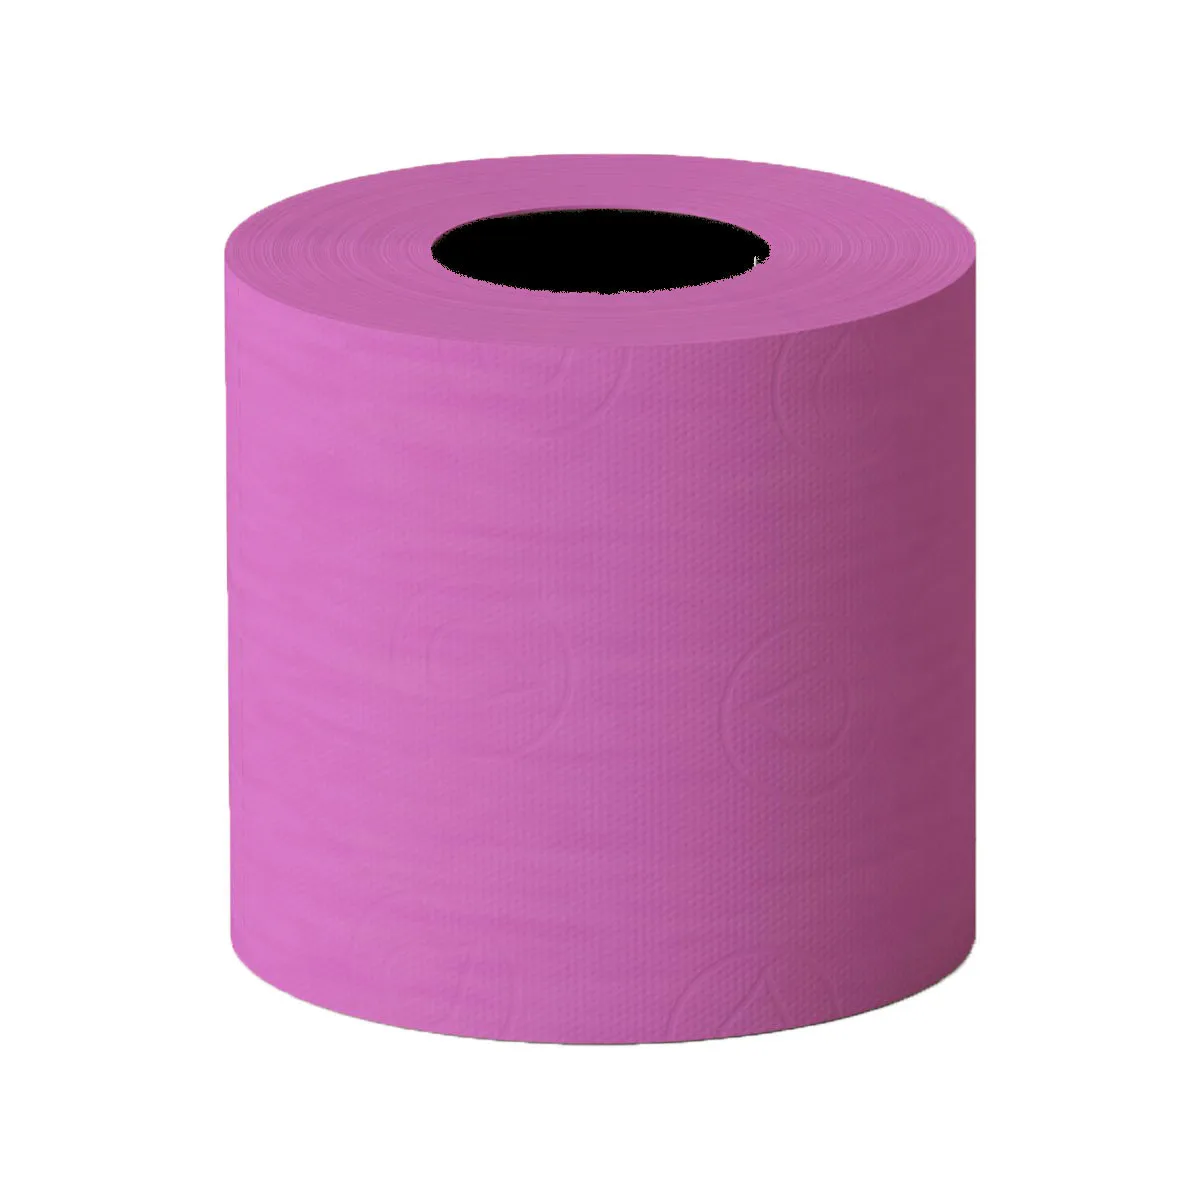 Розовая туалетная бумага. Туалетная бумага Софитель. Renova colored Toilet paper. Туалетная бумага Джоджо.